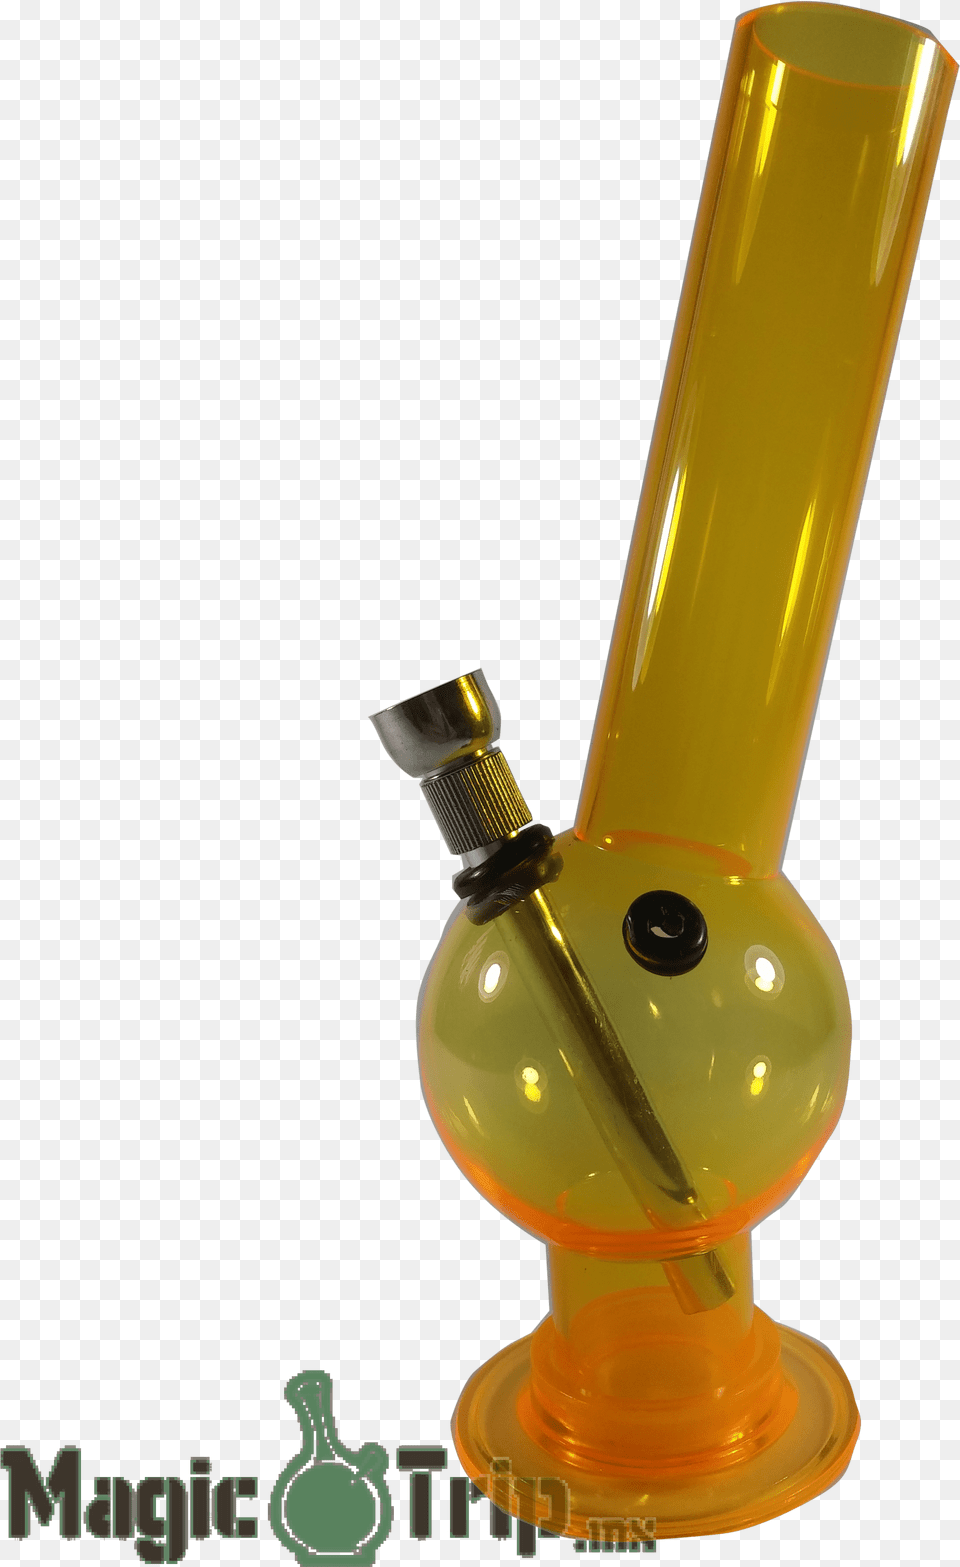 Bong Chico Pipa De Agua Bong, Smoke Pipe, Lamp, Bottle Png Image